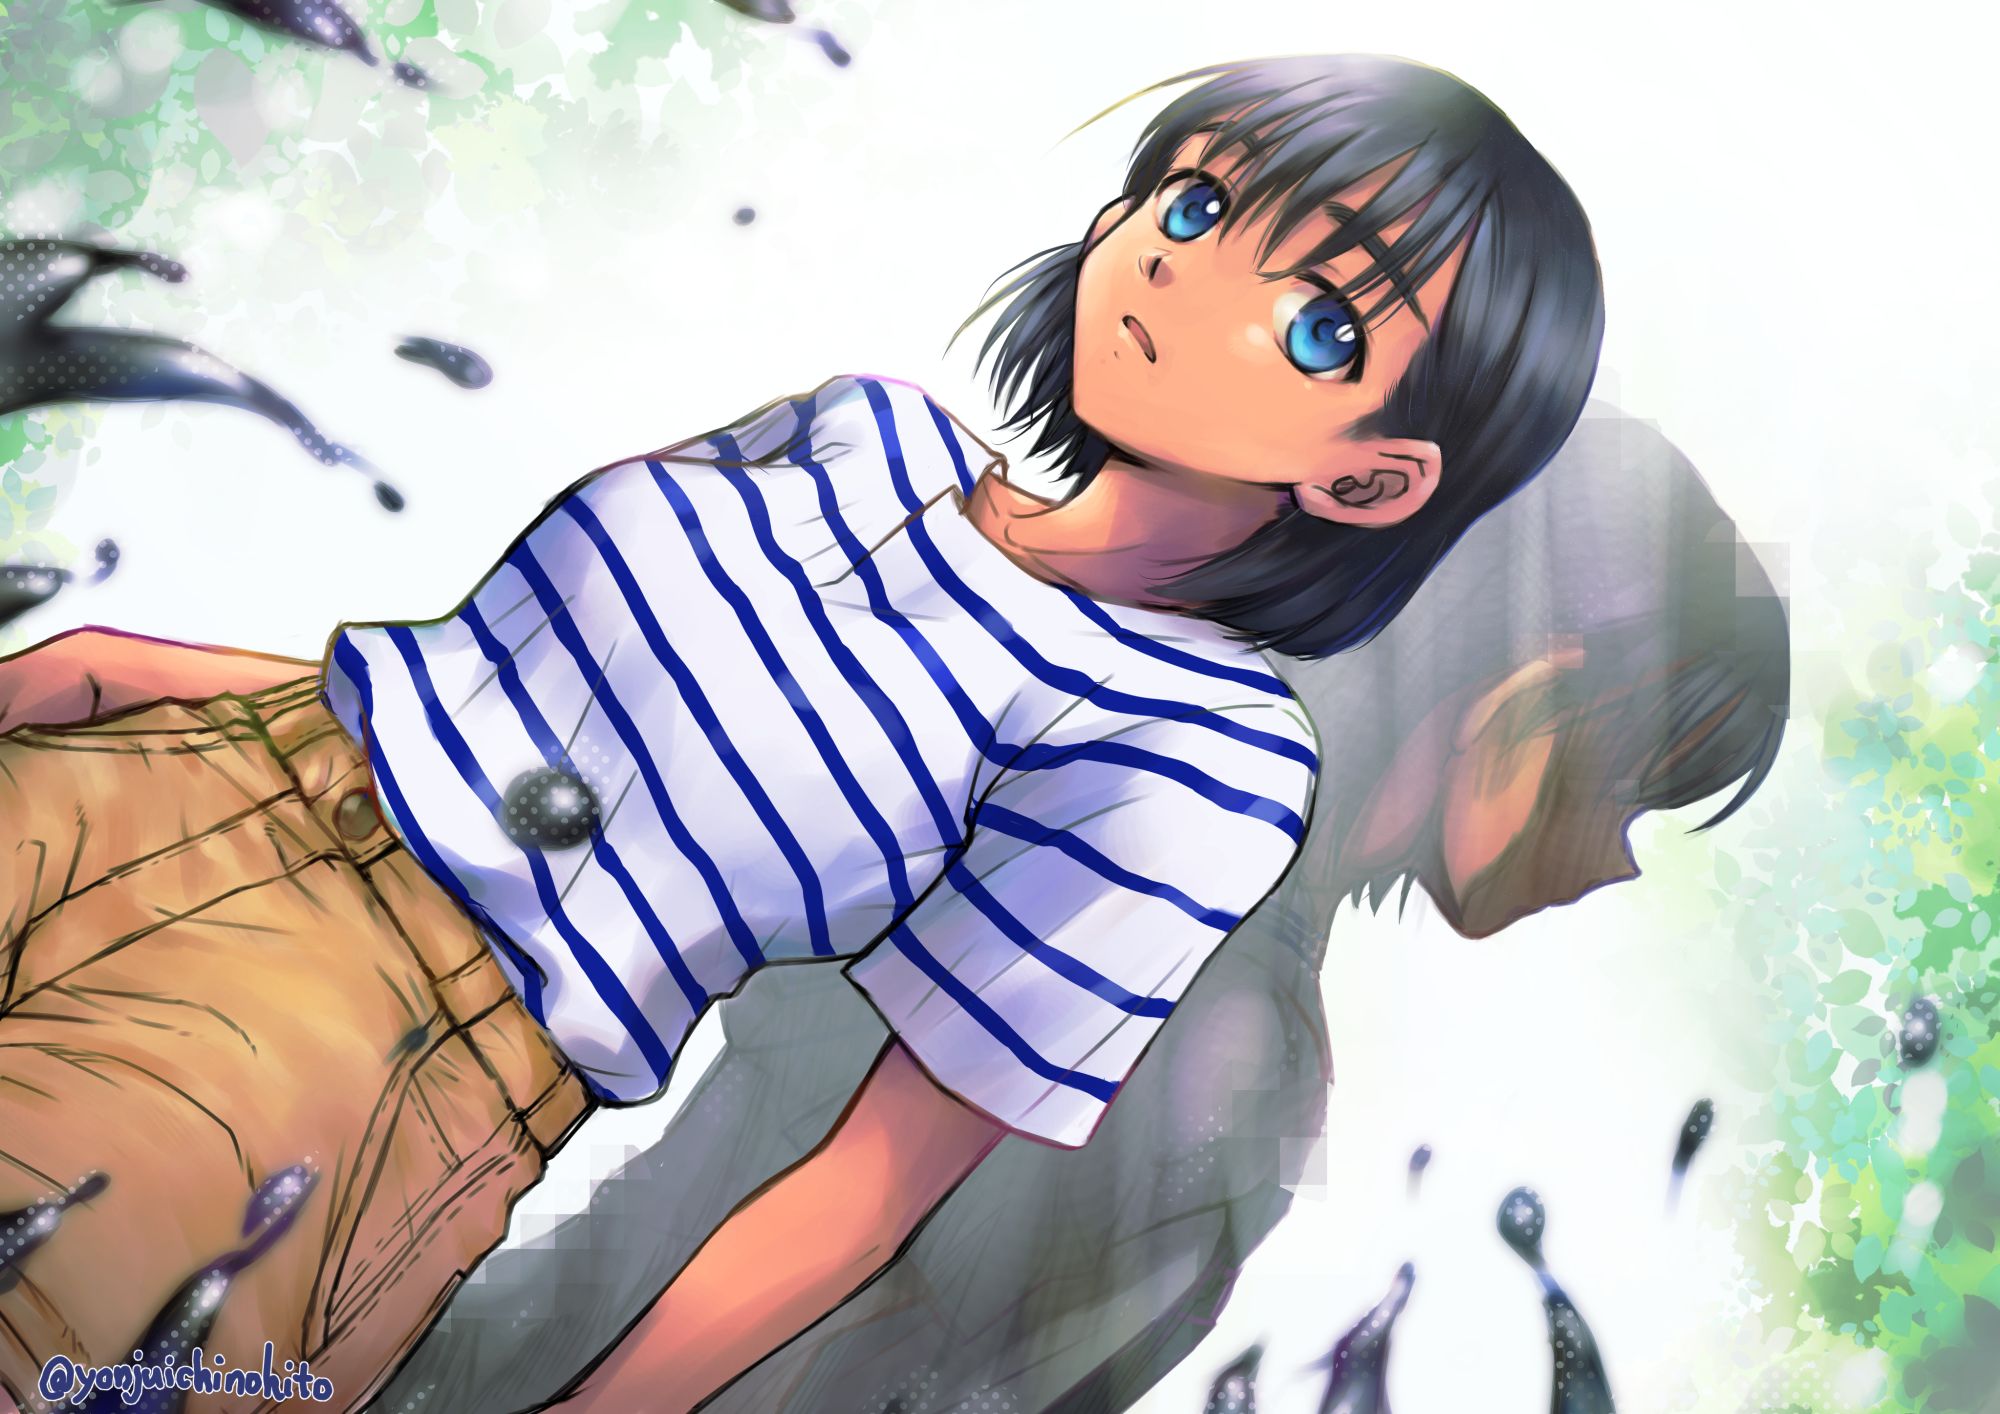 Summer Time Rendering, 4K, anime, Anime screenshot, anime boys, anime girls